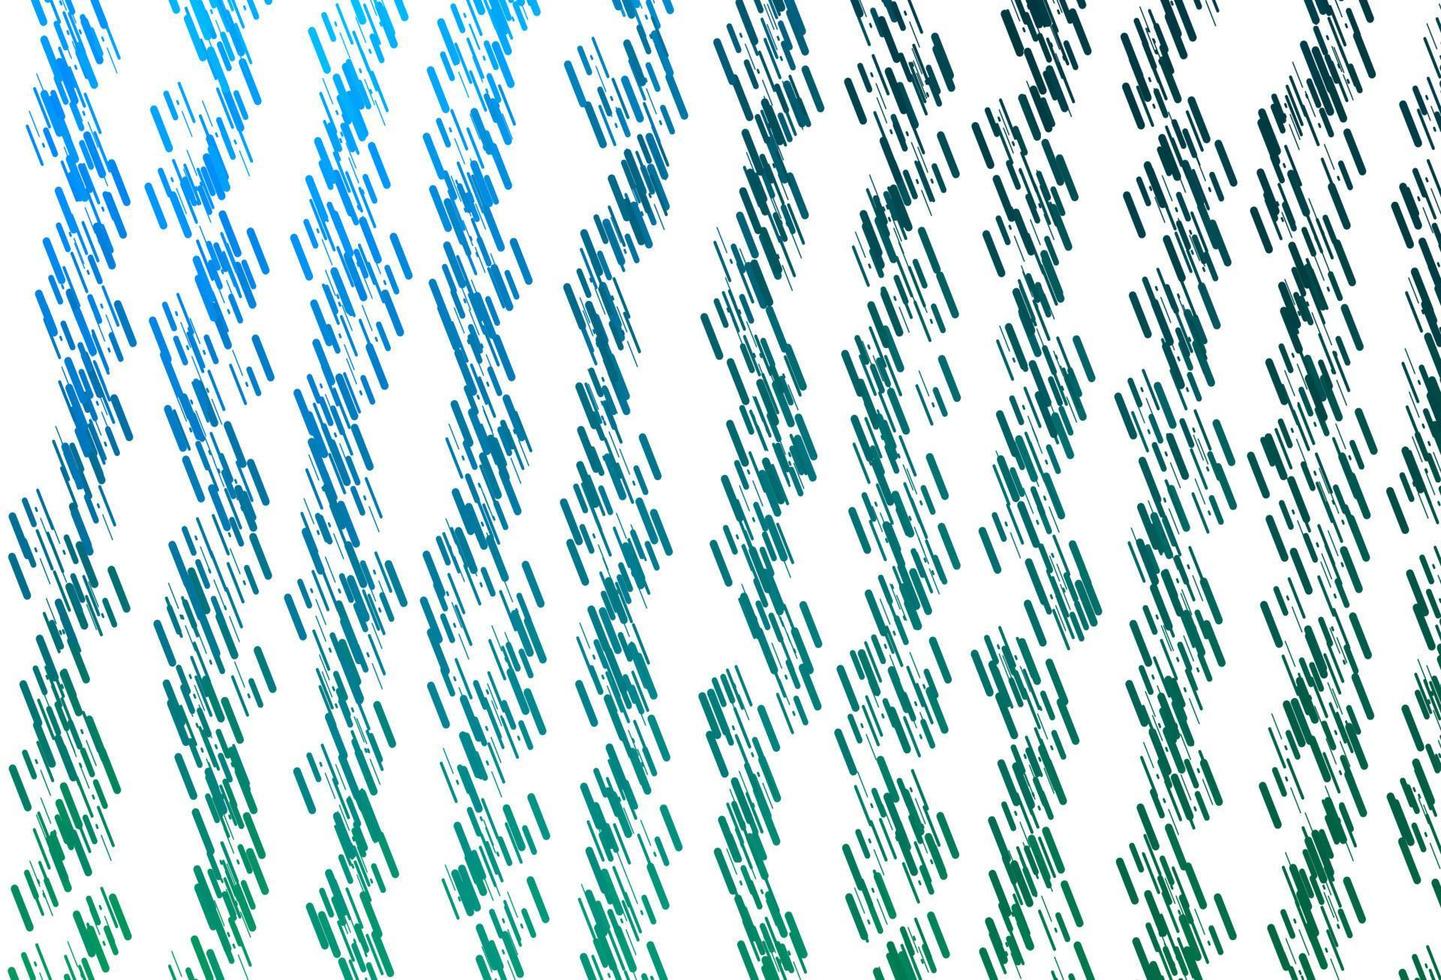 fond de vecteur bleu clair et vert avec des lignes droites.